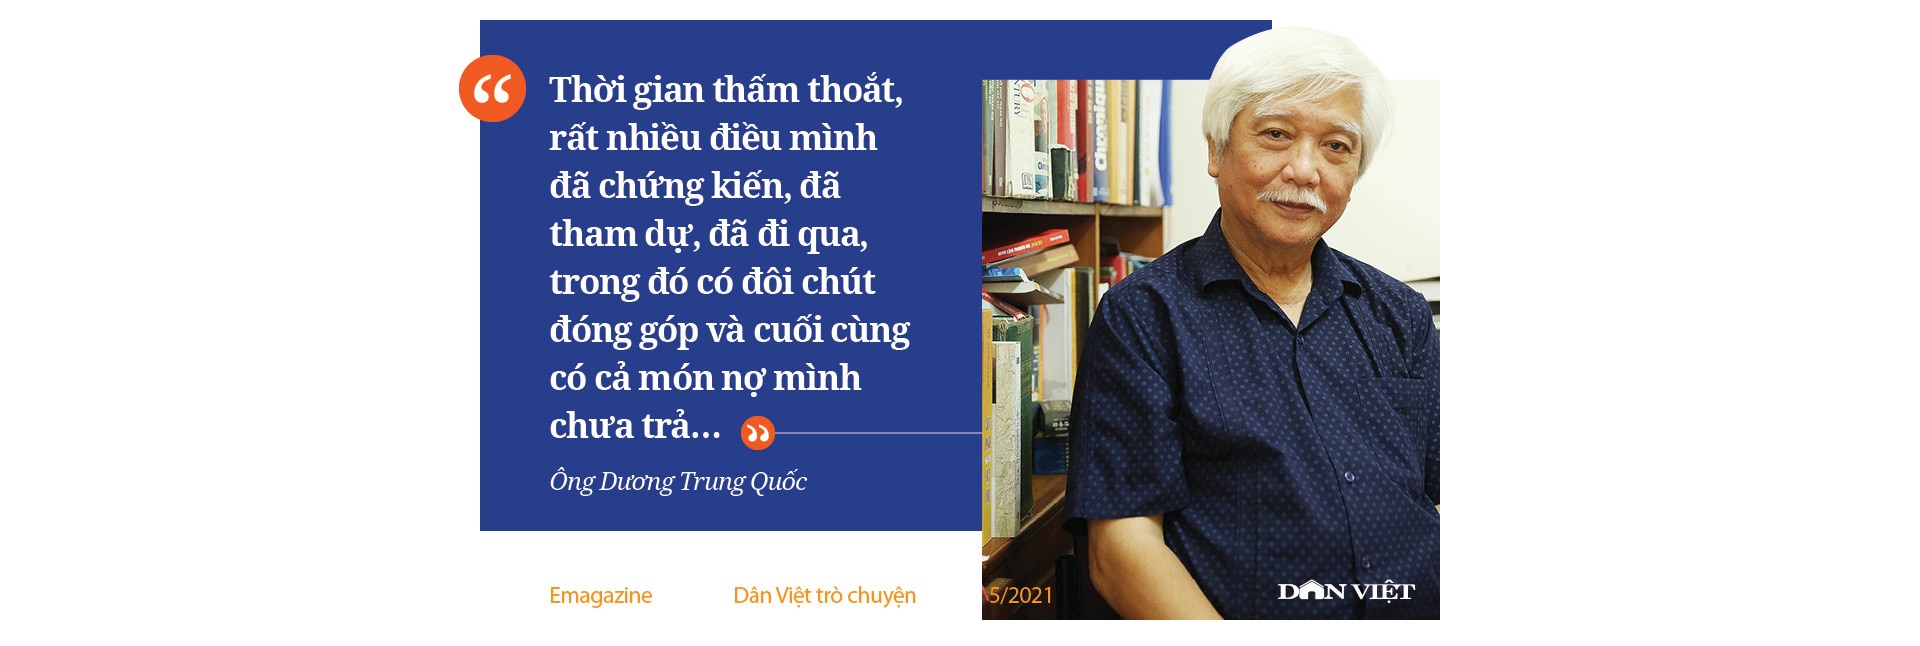 Ông Dương Trung Quốc chia sẻ những chuyện ít người biết sau 20 năm gắn bó nghị trường - Ảnh 4.